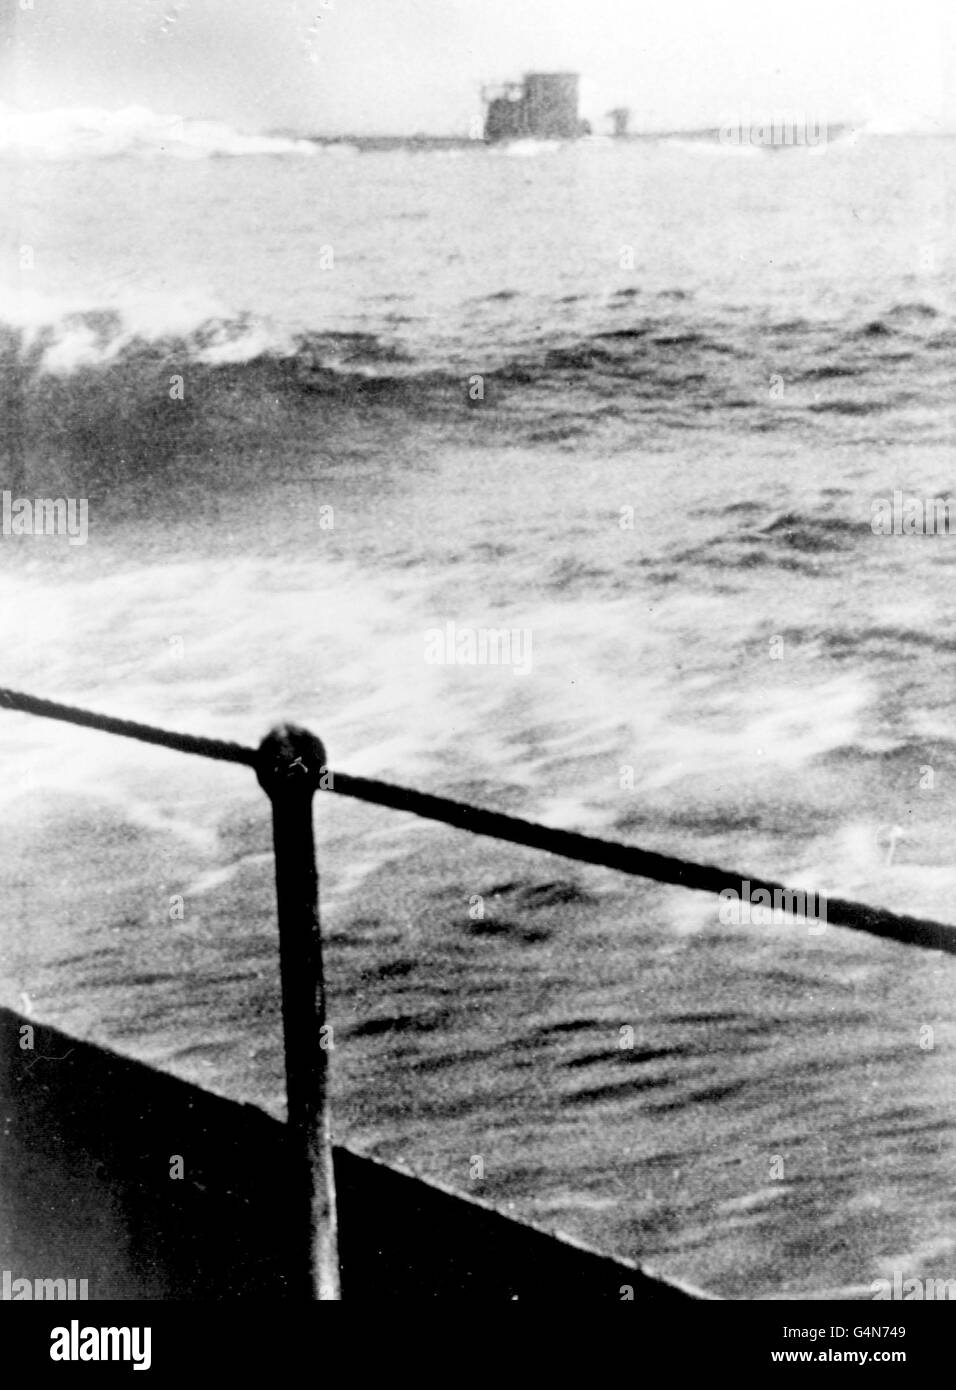 c19/9/1942: Ein seltenes Bild aus einer kanadischen Corvette, das ein deutsches U-Boot zeigt, das während des Zweiten Weltkriegs die Flucht ergriffene. Das U-Boot wurde nach einem Oberflächenkampf gerammt, bei dem Tiefenladungen und Geschütze eingesetzt wurden. Möglicherweise U210 oder U379. Stockfoto